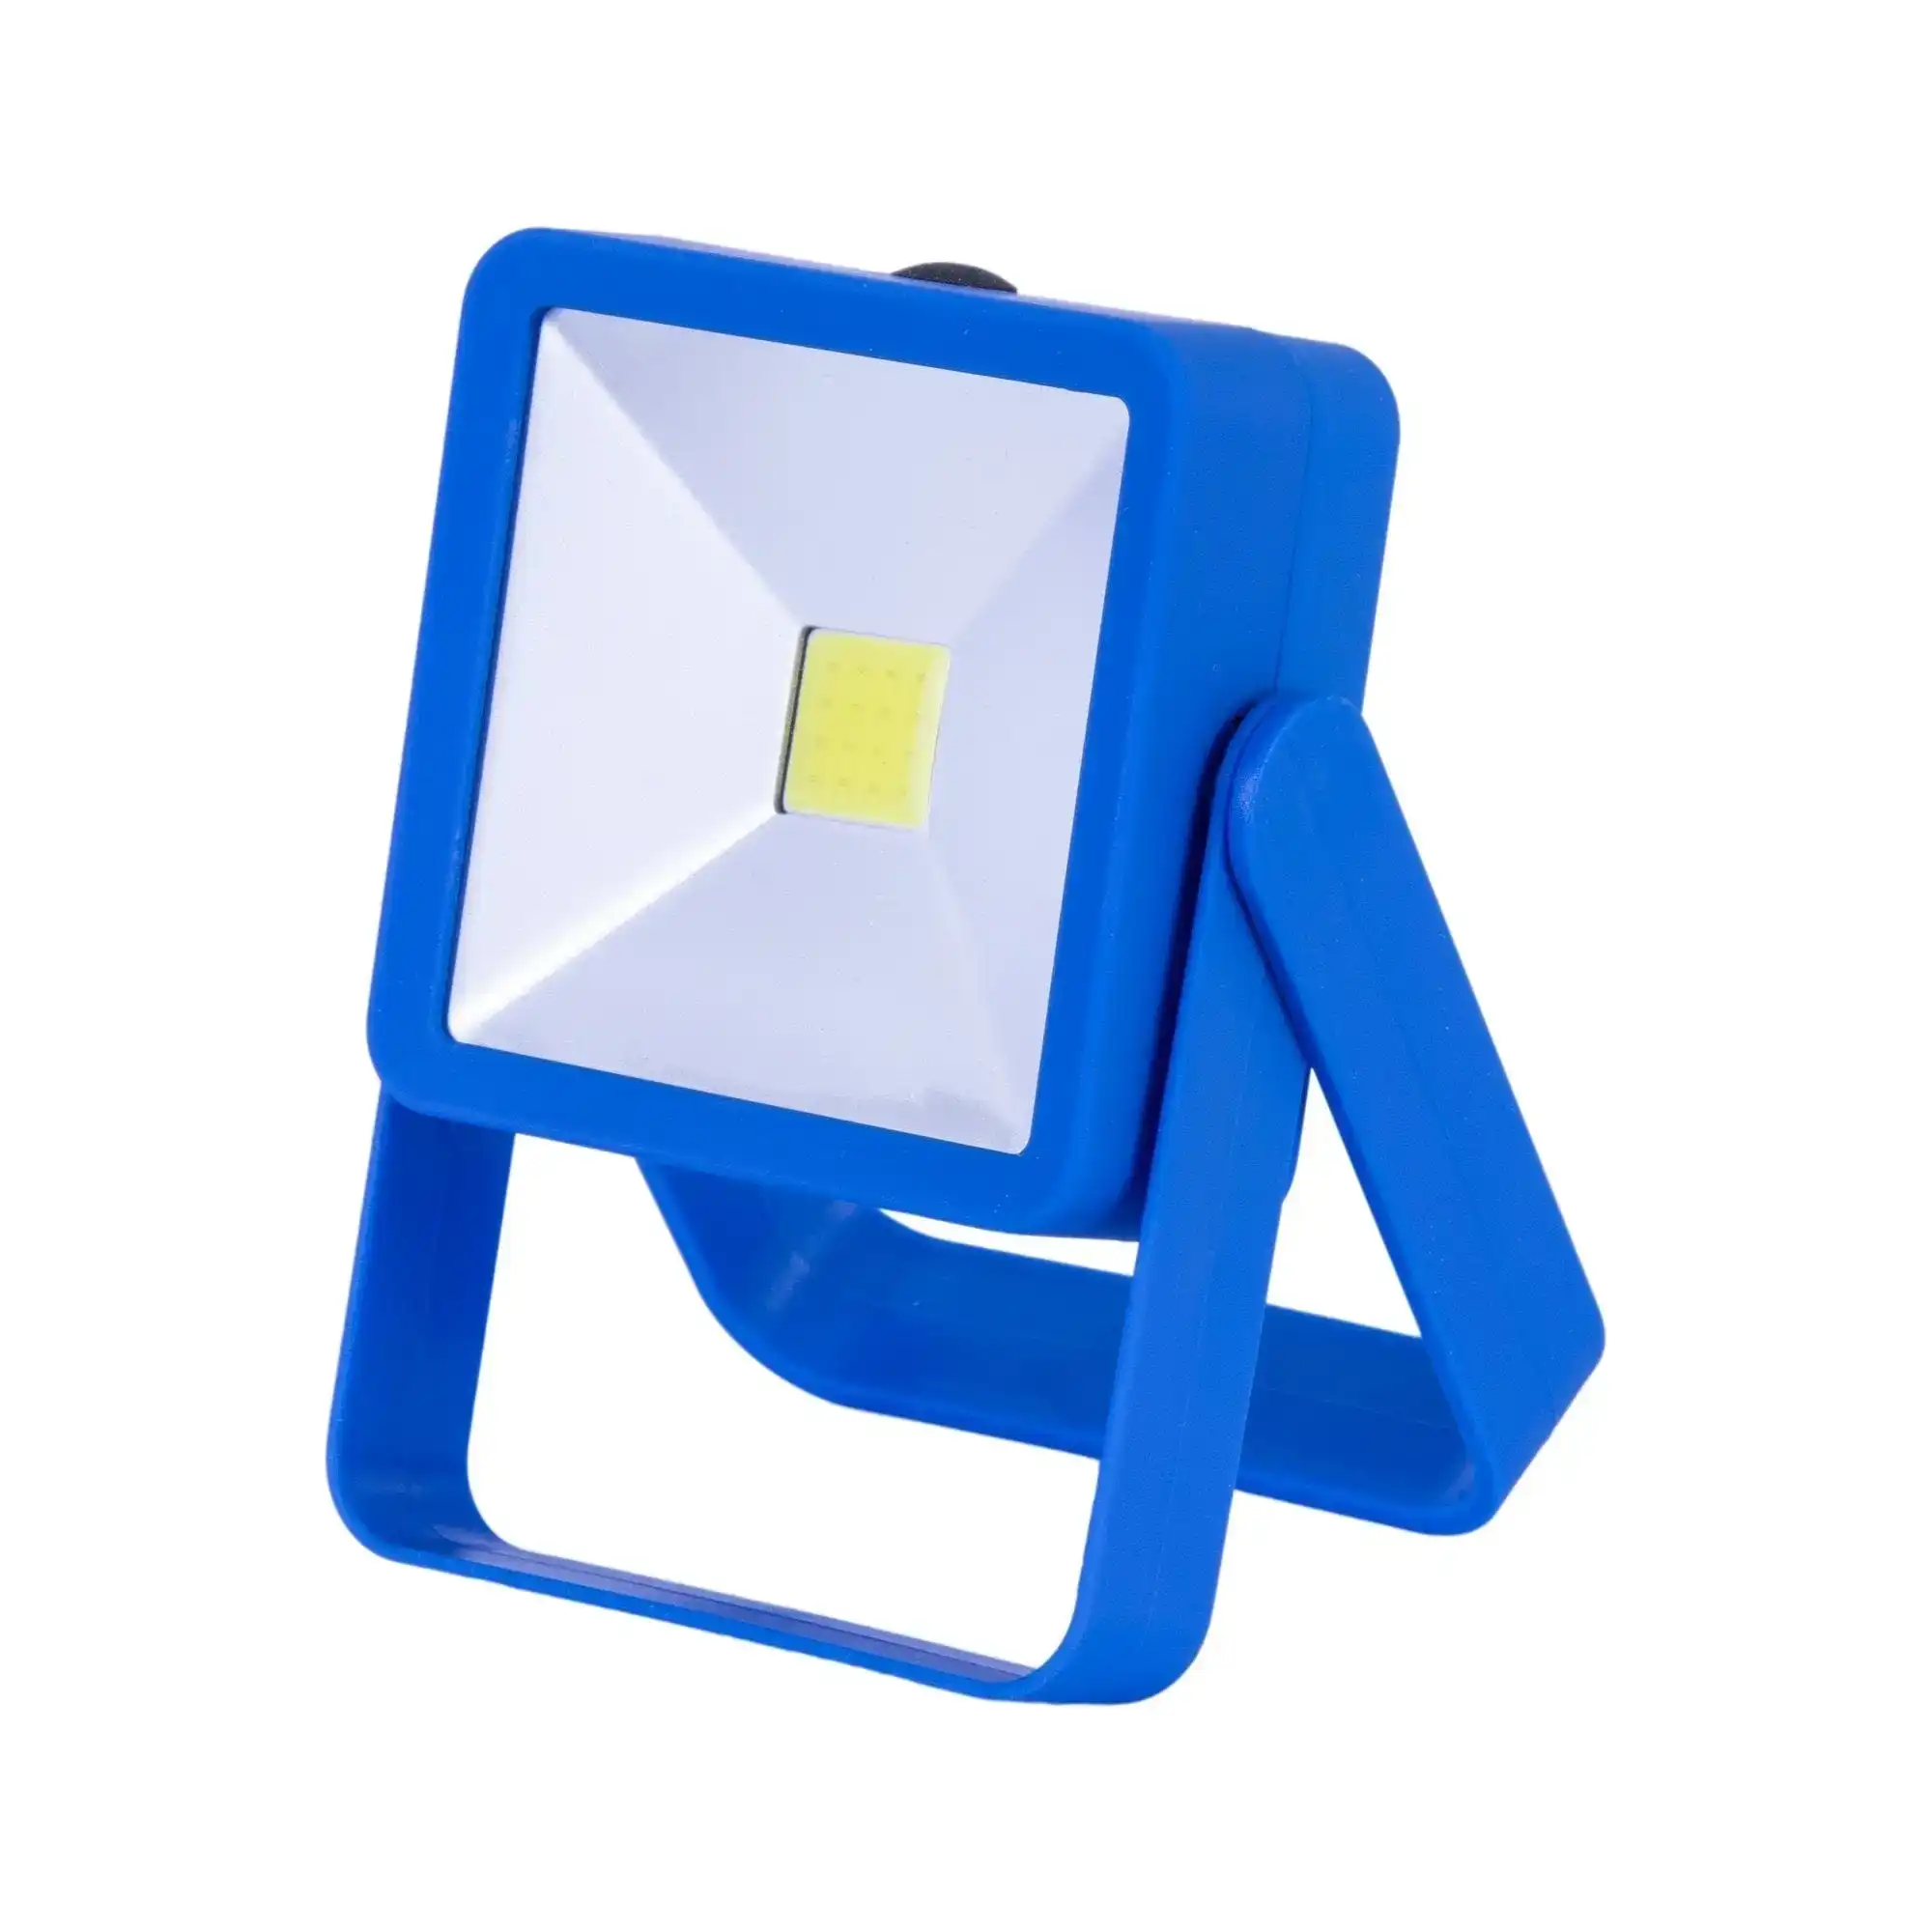 Brillar Swivel Stand Worklight - Blue